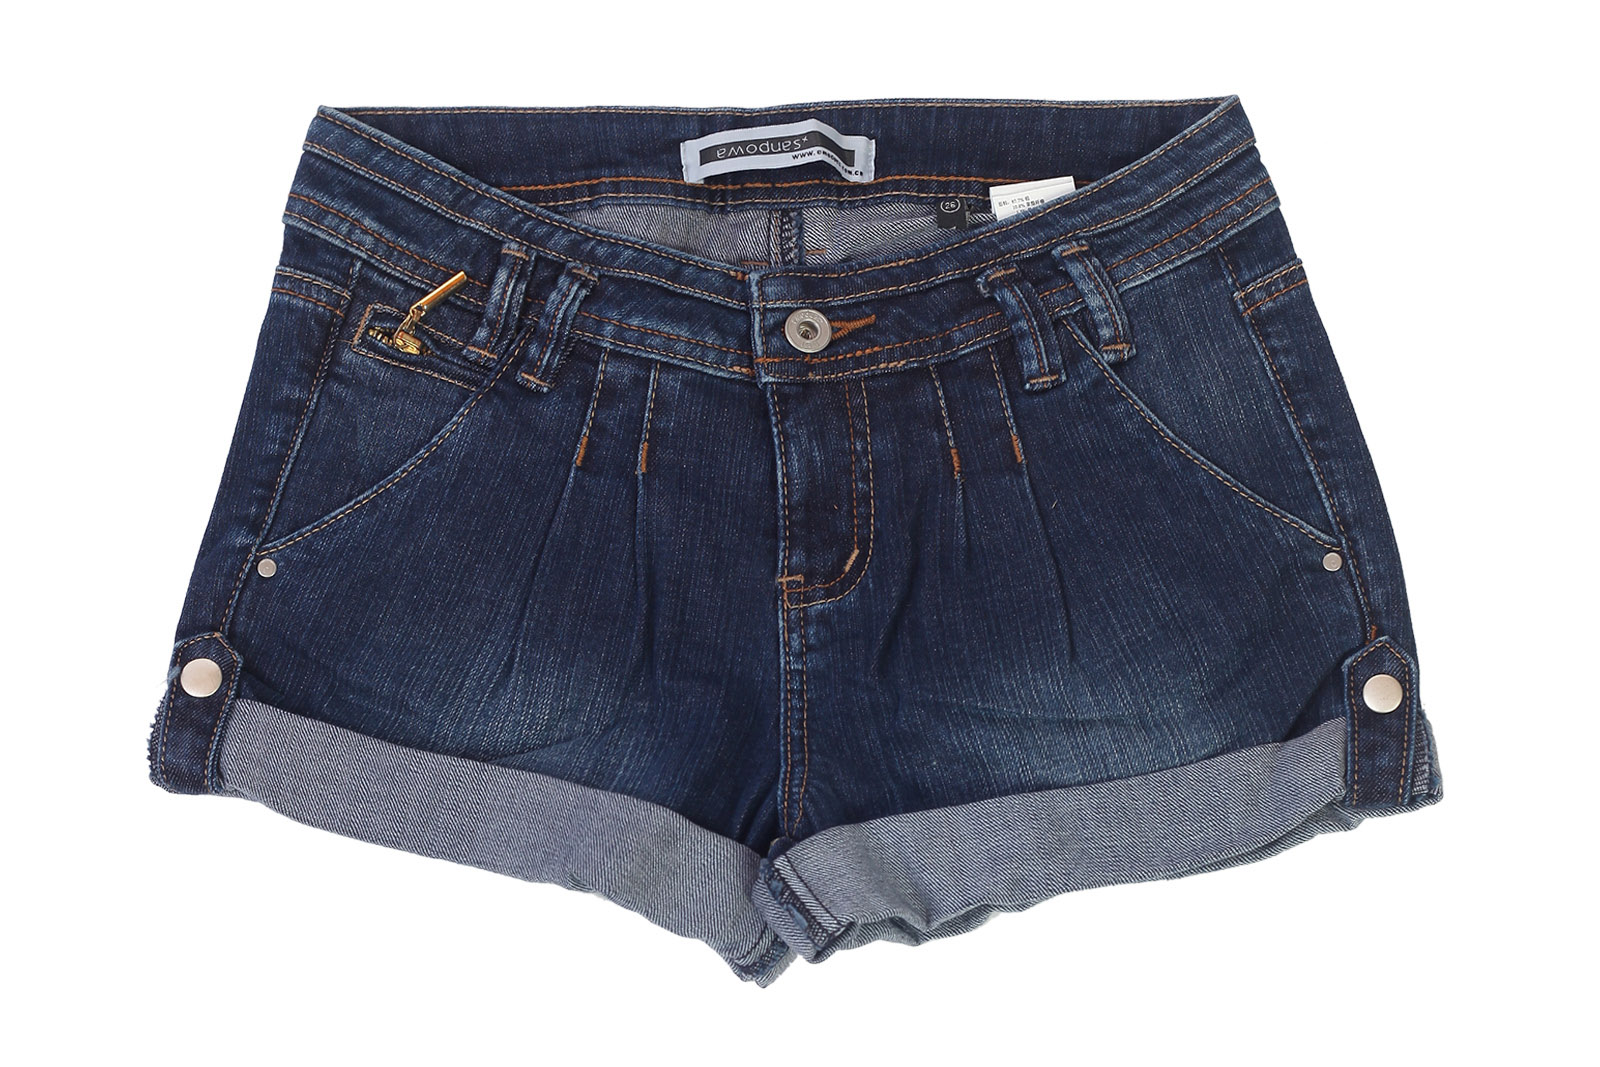 Джинсовые женские шорты Emodues с подворотом. Интригующая длина, ноский деним, модный классический цвет №353